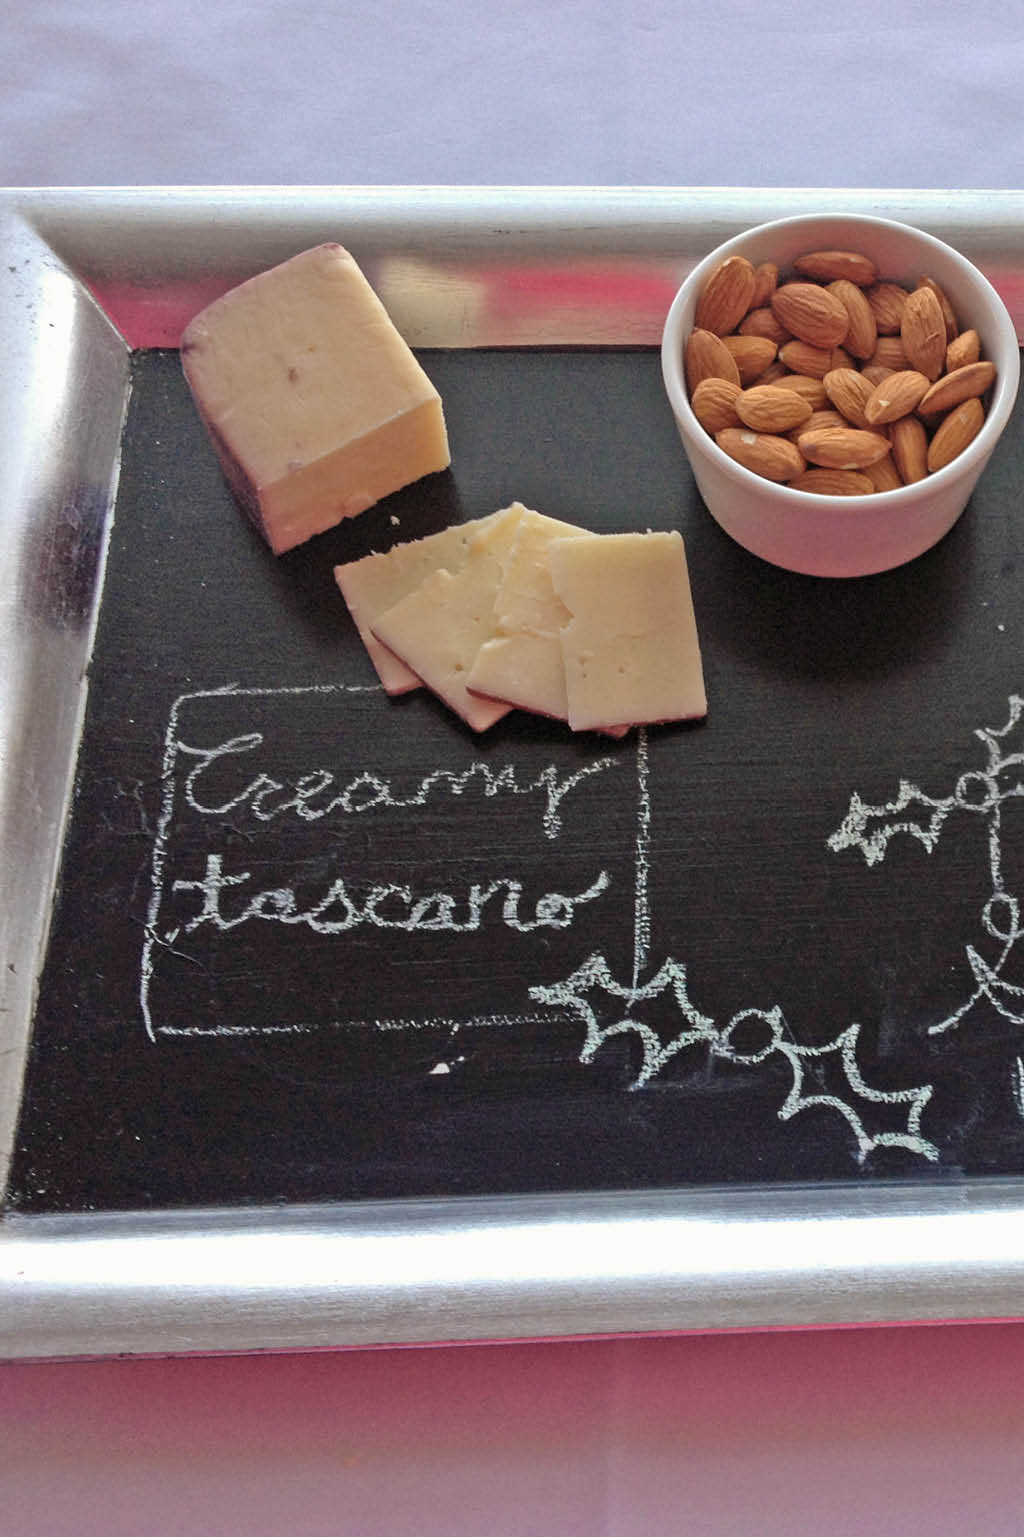 chalkboard-serving-tray